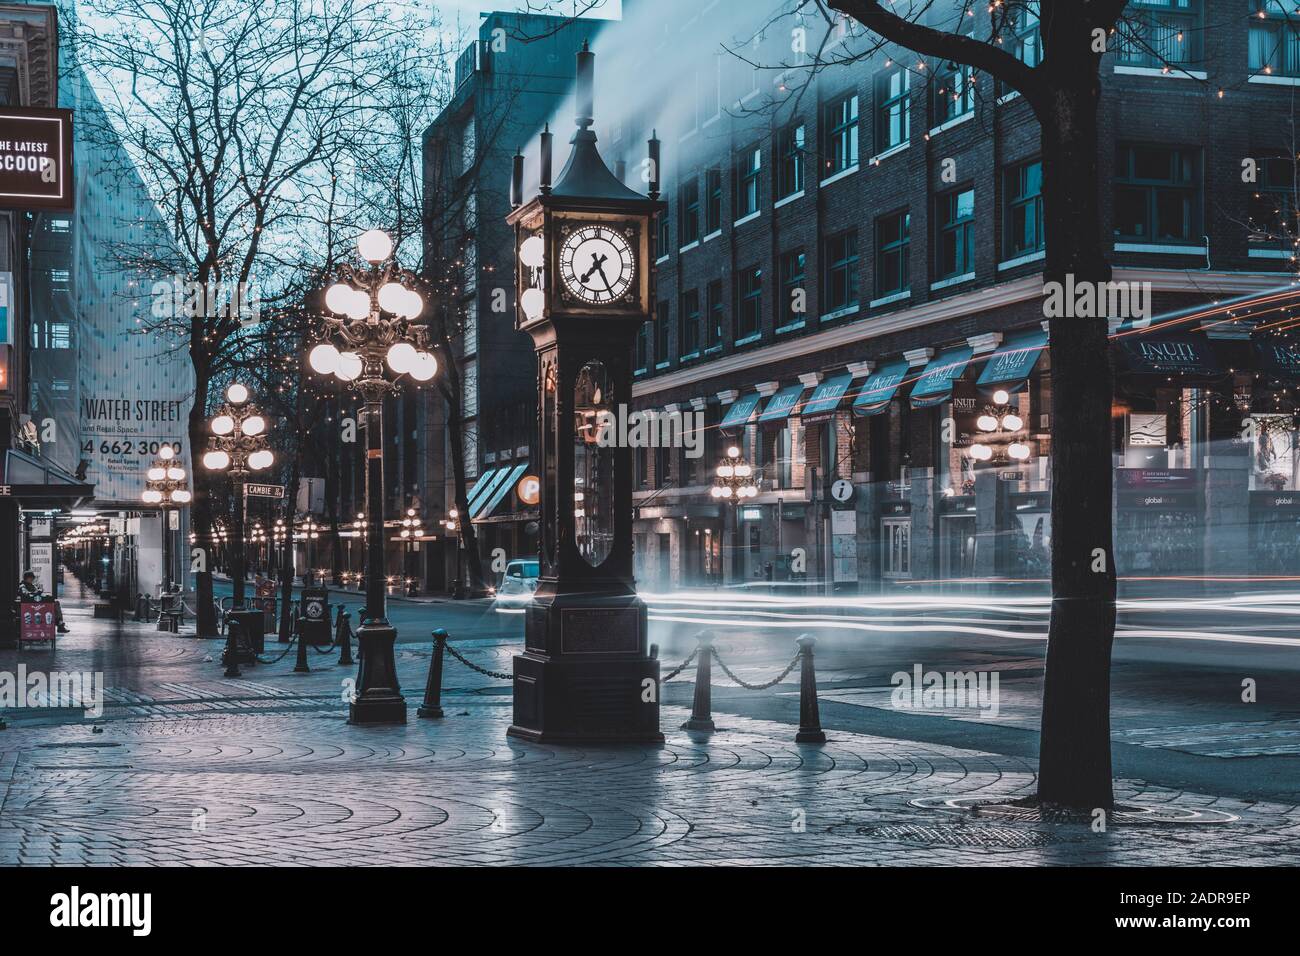 Vancouver, Colombie-Britannique - Dec 3, 2019 : La célèbre horloge à vapeur de Gastown à Vancouver city avec des voitures light trails de nuit Banque D'Images